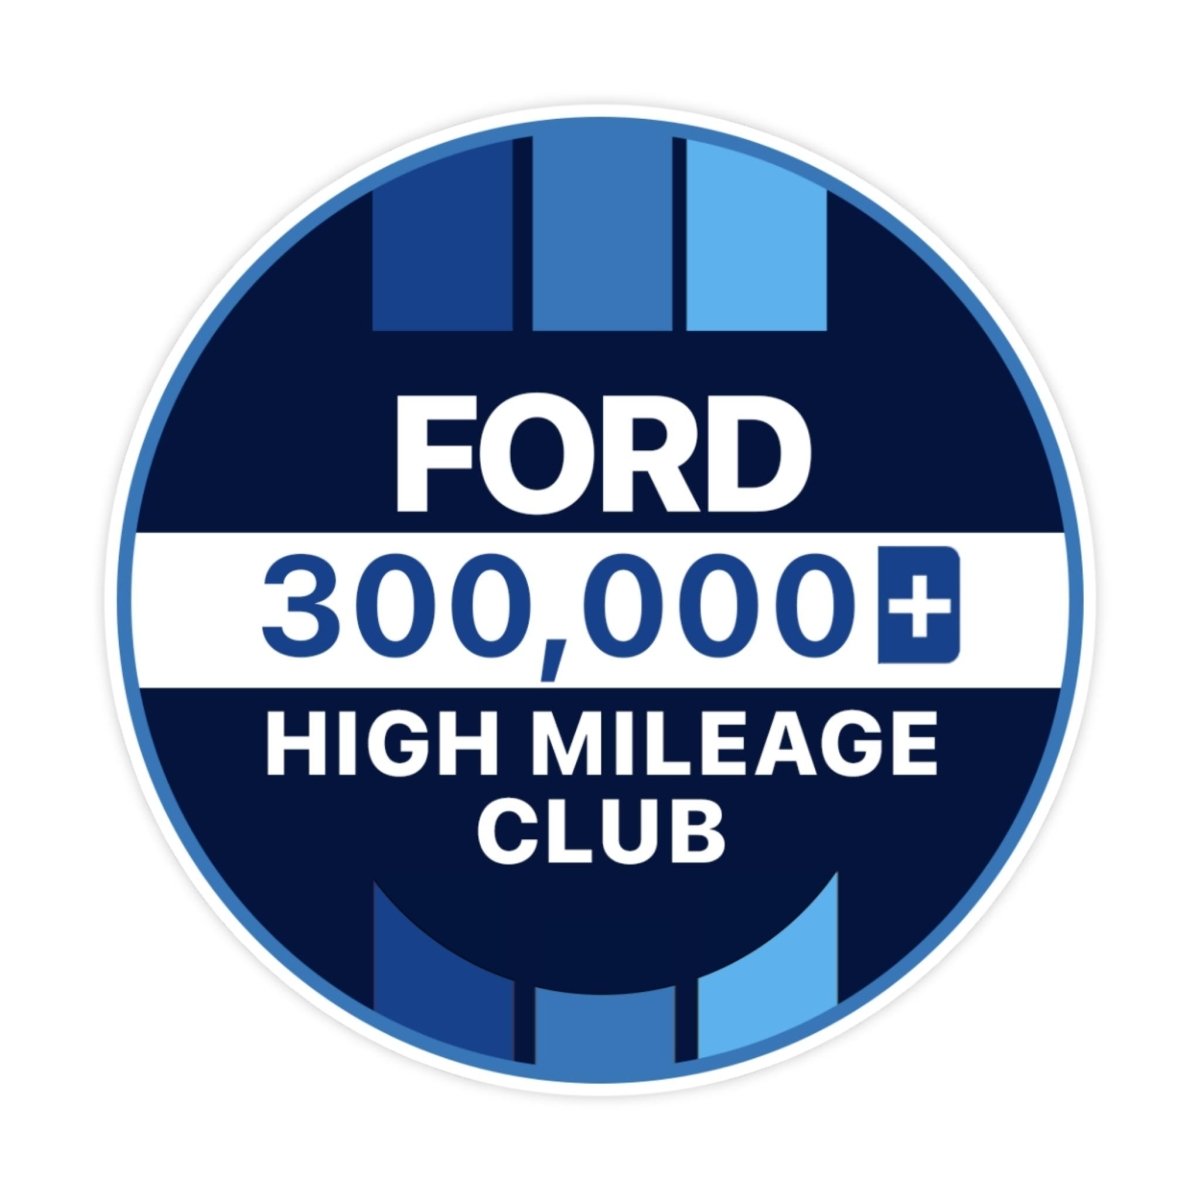 Ford 400k High Mileage Club Sticker - stickerbullFord 400k High Mileage Club StickerRetail StickerstickerbullstickerbullTaylor_Ford300k [#120]300kFord 400k High Mileage Club Sticker